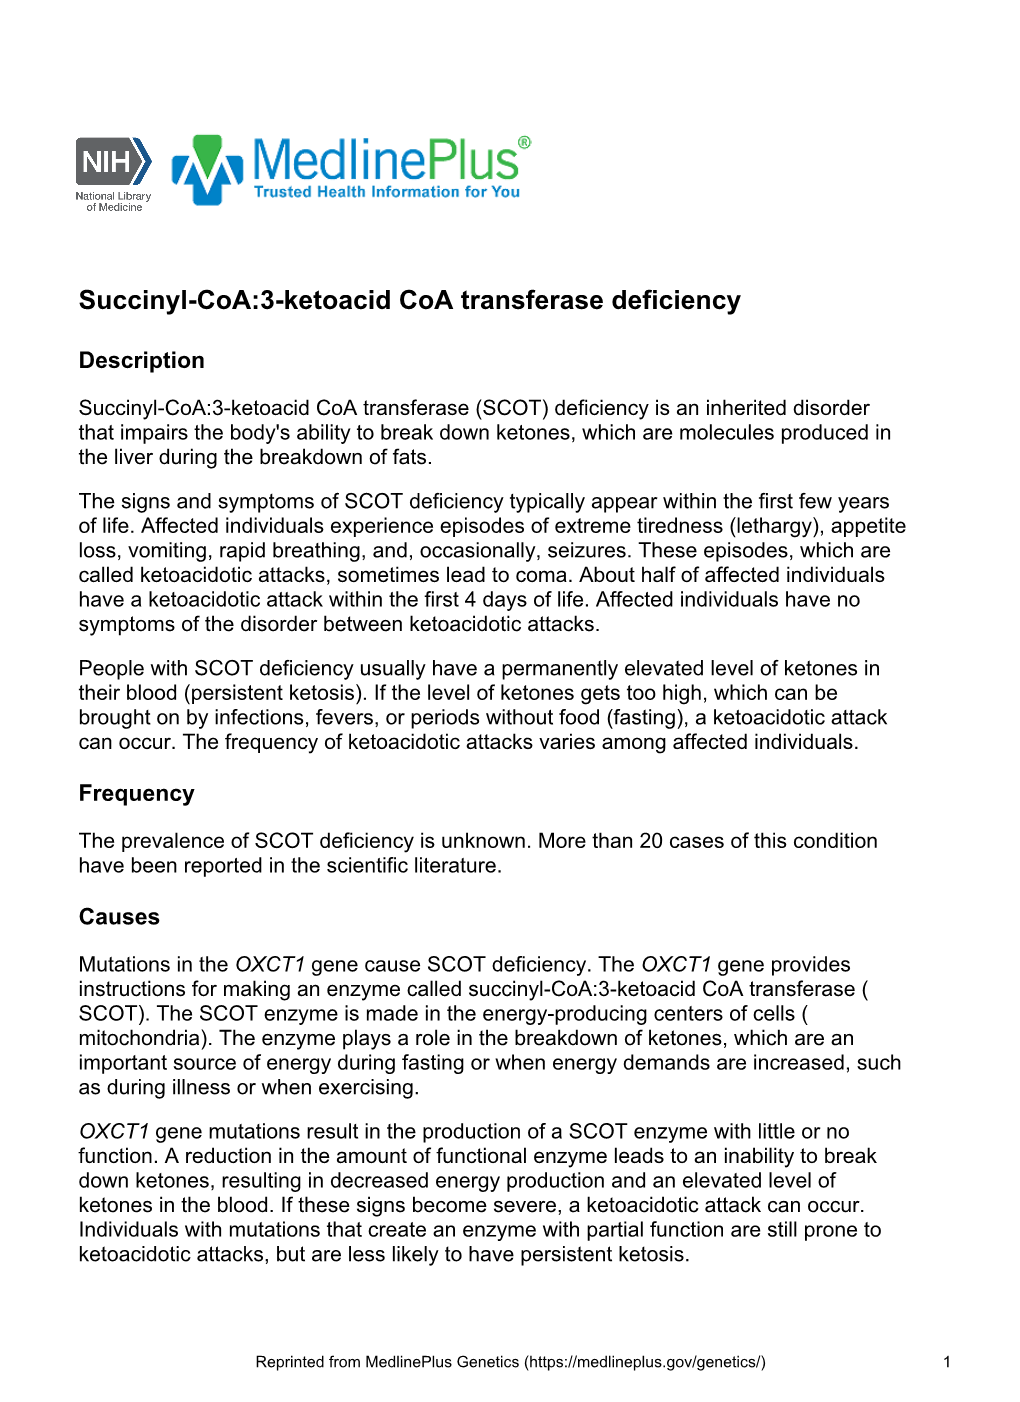 Succinyl-Coa:3-Ketoacid Coa Transferase Deficiency